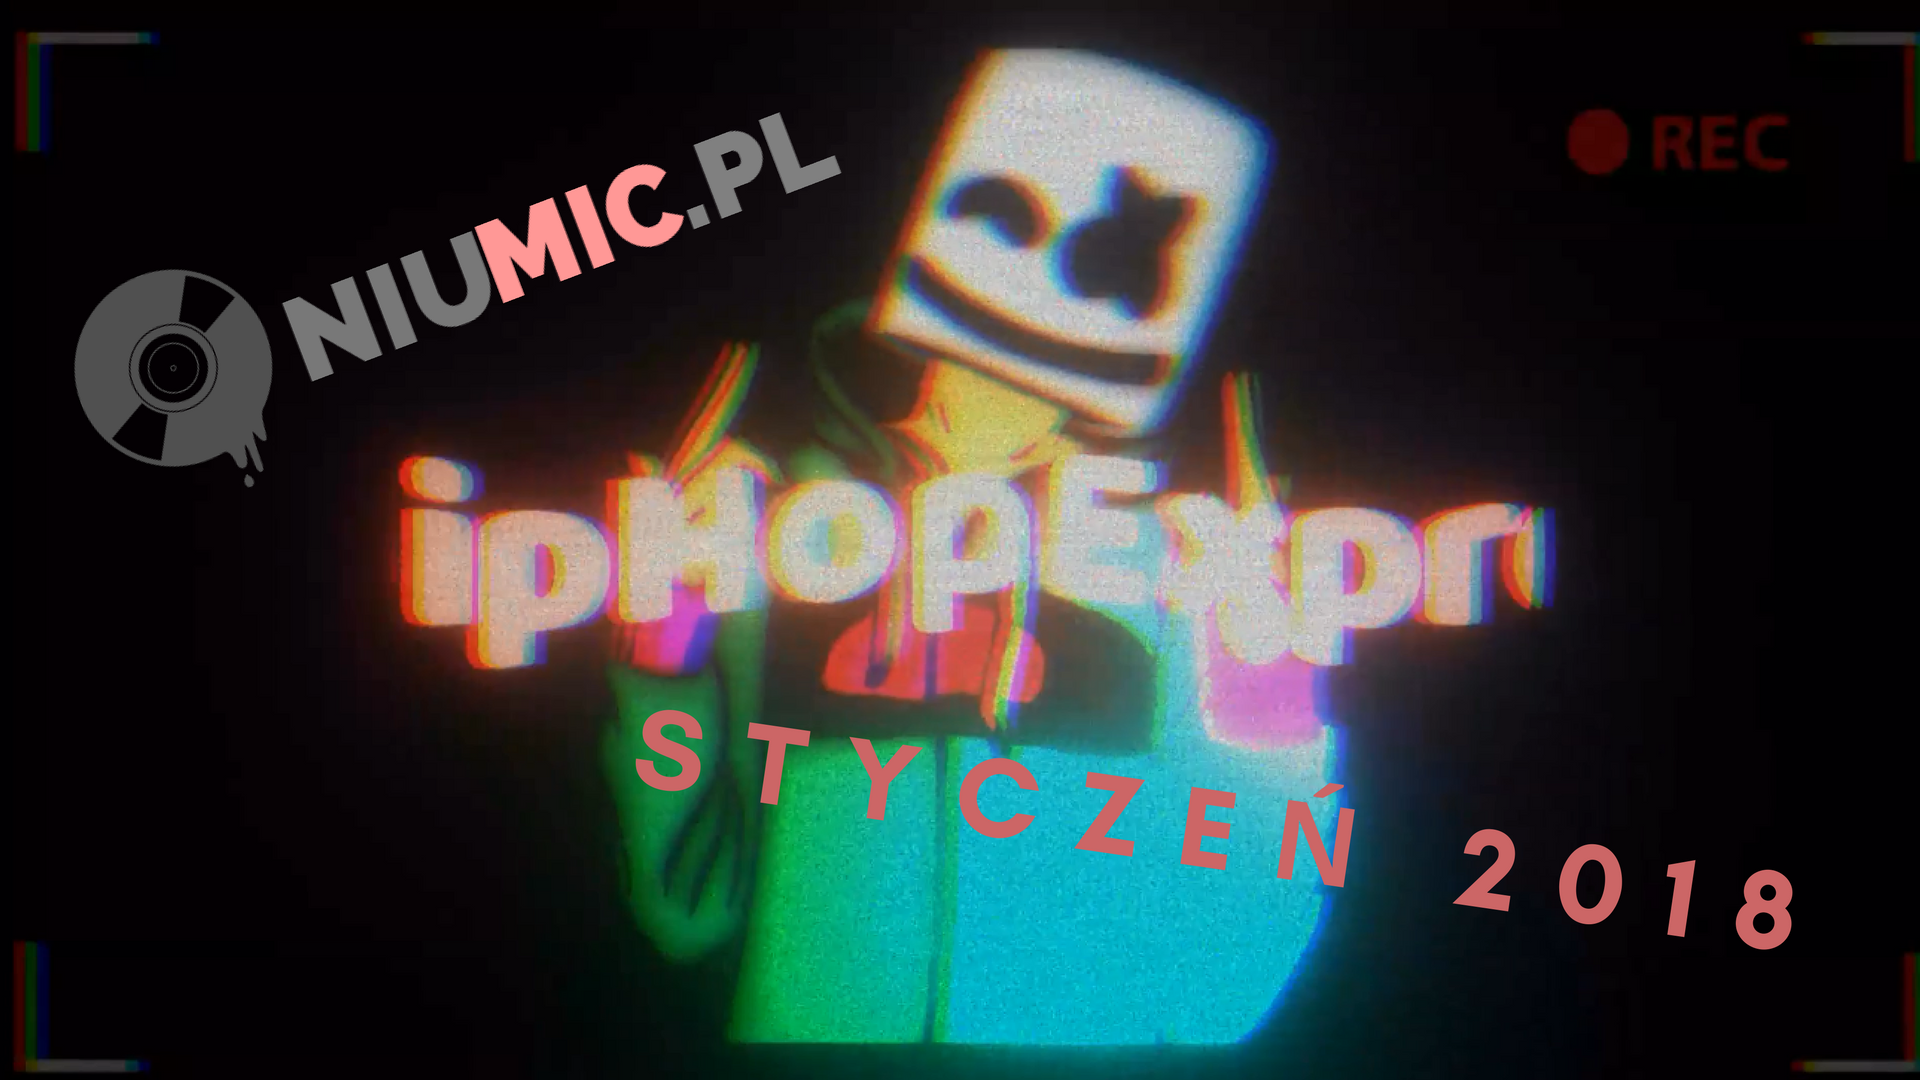 Styczeń 2018 || #HipHopExpress || niumic.pl